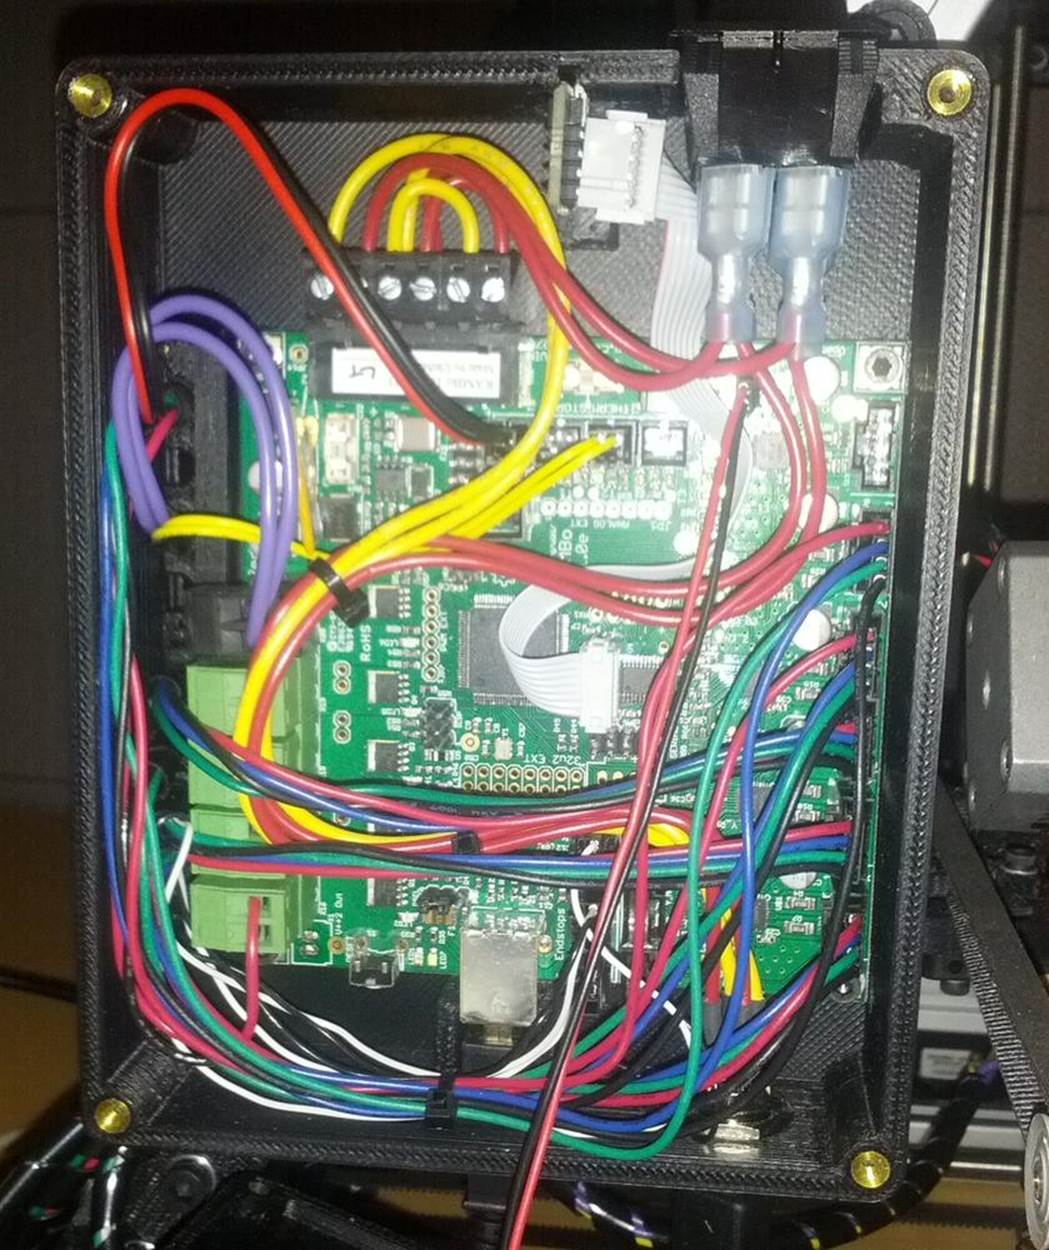 RAMBo electronics in Lulzbot AO-101